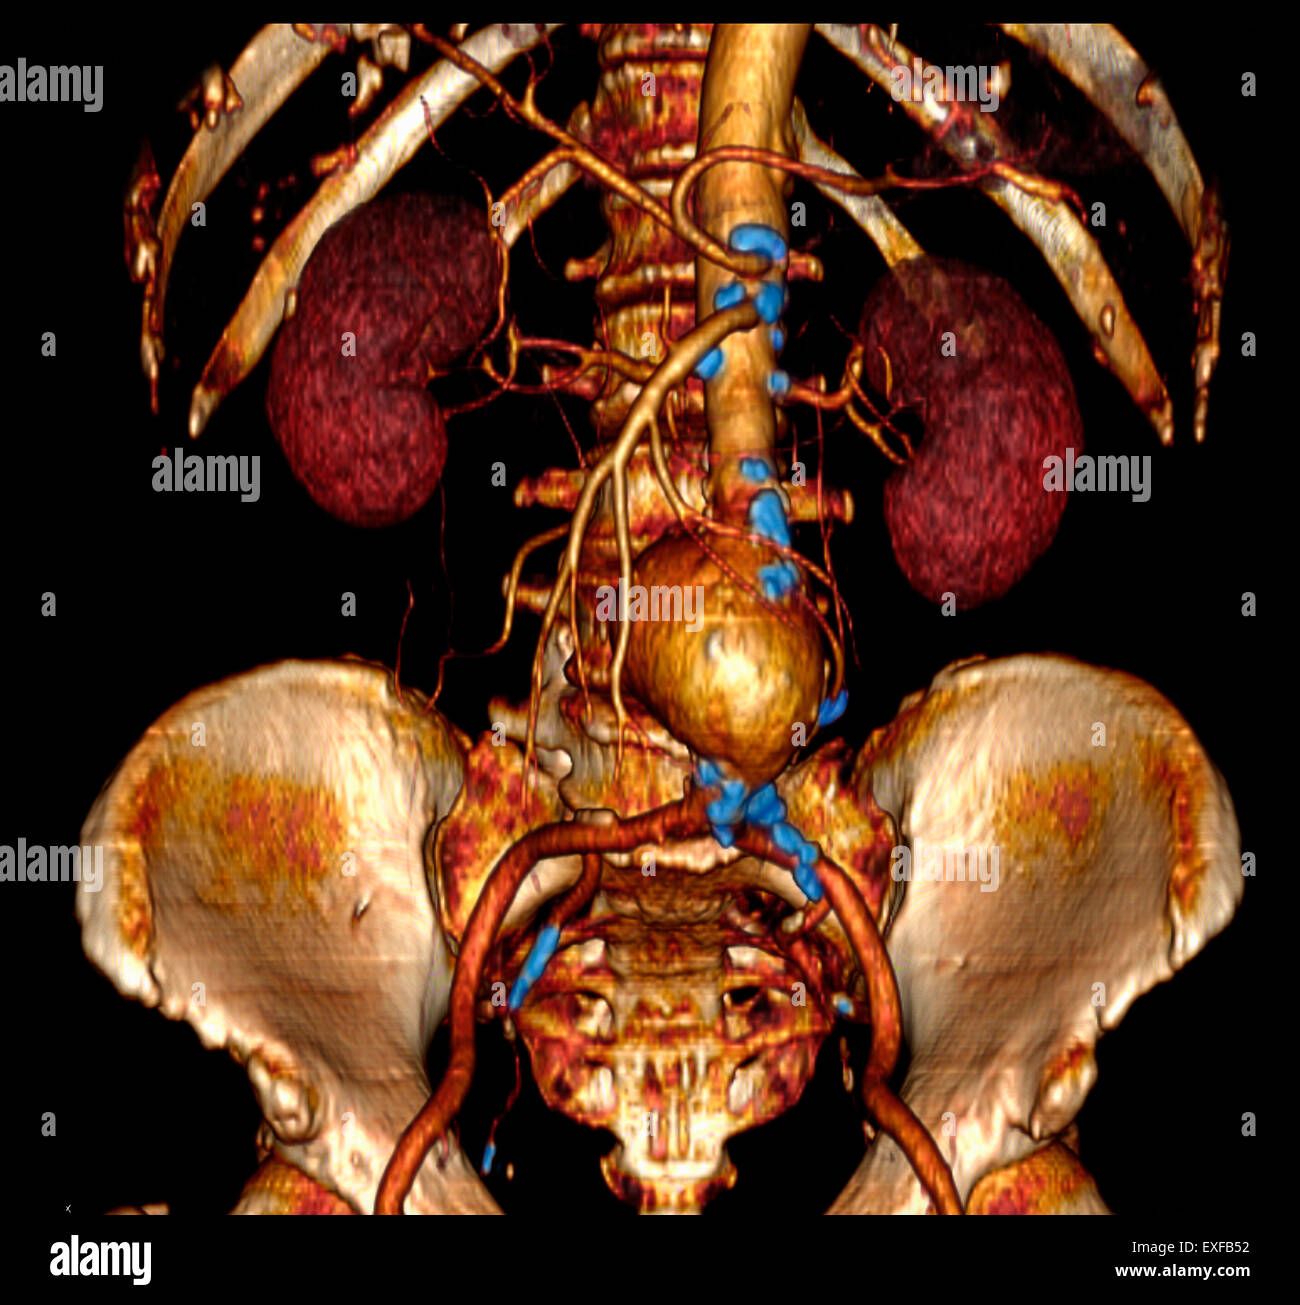 Angiographie abdominale 3D CT scan, l'anévrisme de l'aorte. Les calcifications le long de l'aorte, branches, indiquant l'athérosclérose Banque D'Images